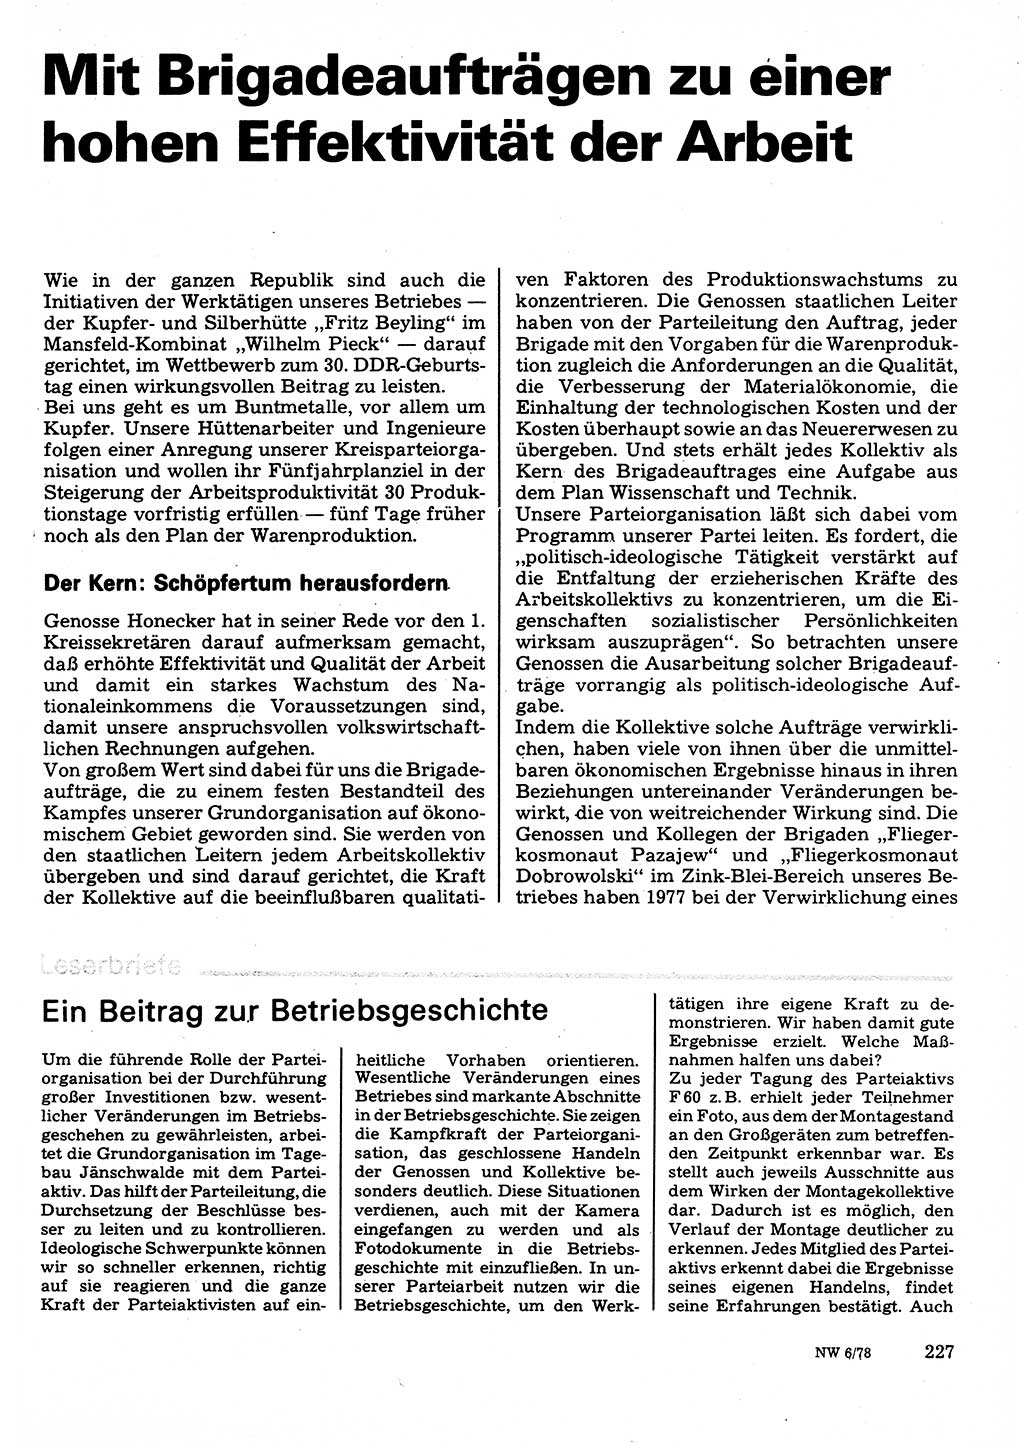 Neuer Weg (NW), Organ des Zentralkomitees (ZK) der SED (Sozialistische Einheitspartei Deutschlands) für Fragen des Parteilebens, 33. Jahrgang [Deutsche Demokratische Republik (DDR)] 1978, Seite 227 (NW ZK SED DDR 1978, S. 227)